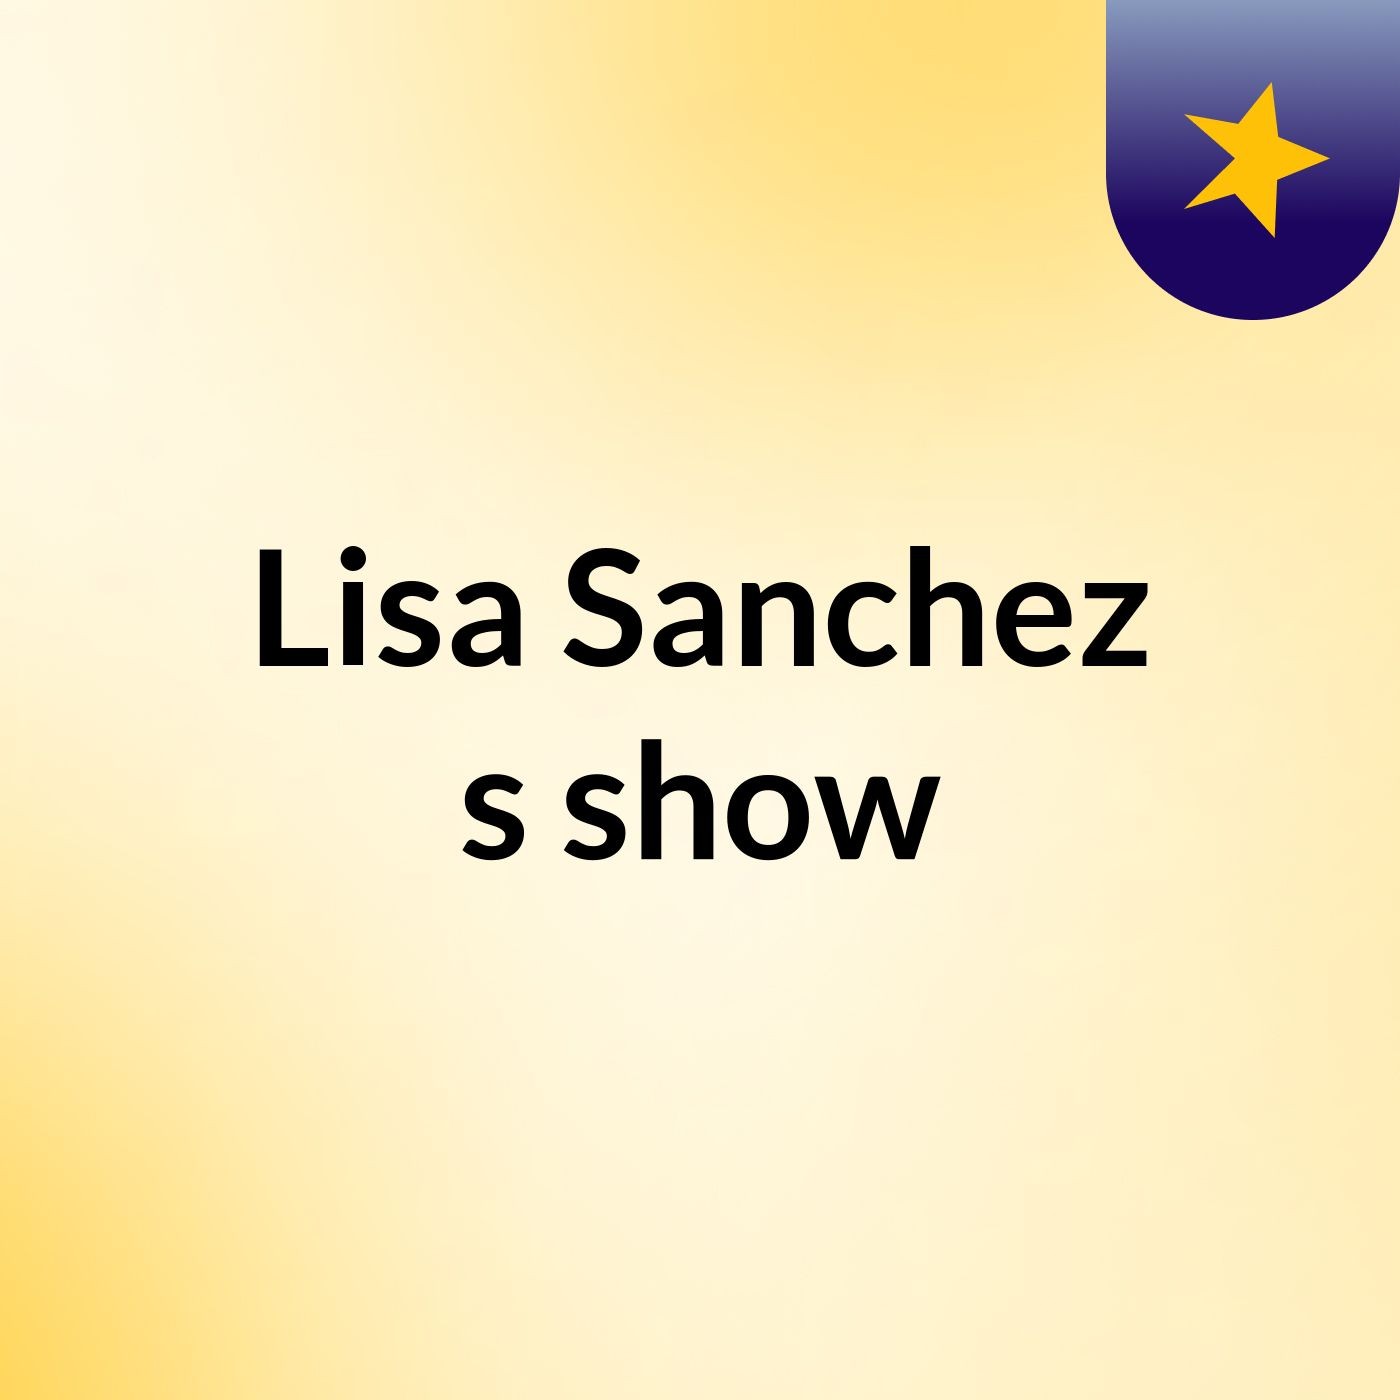 Lisa Sanchez's show